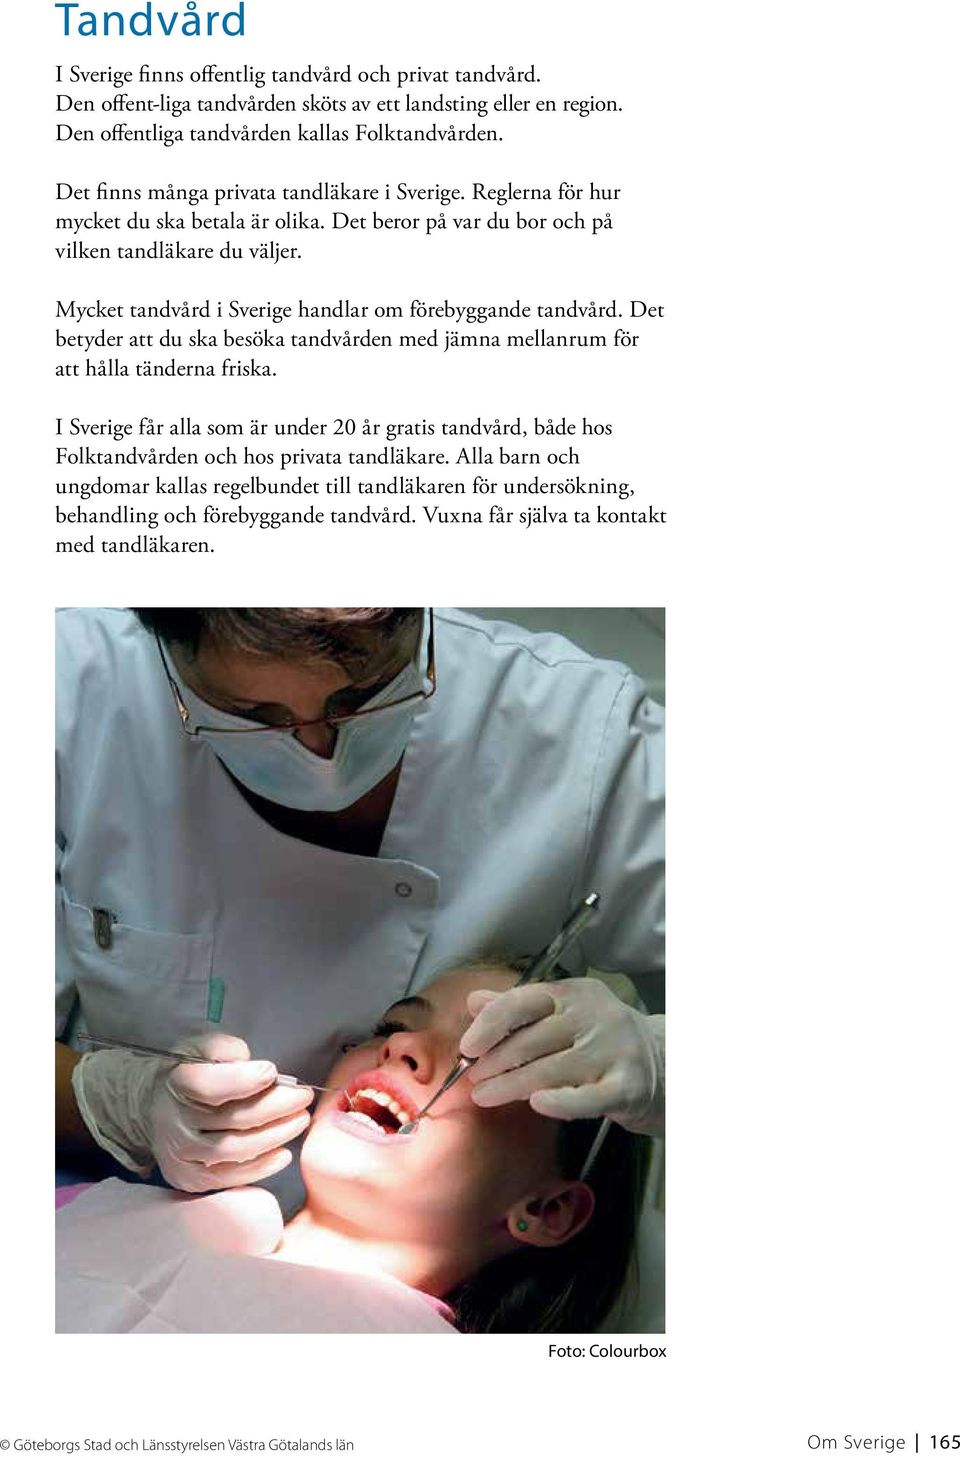 Mycket tandvård i Sverige handlar om förebyggande tandvård. Det betyder att du ska besöka tandvården med jämna mellanrum för att hålla tänderna friska.